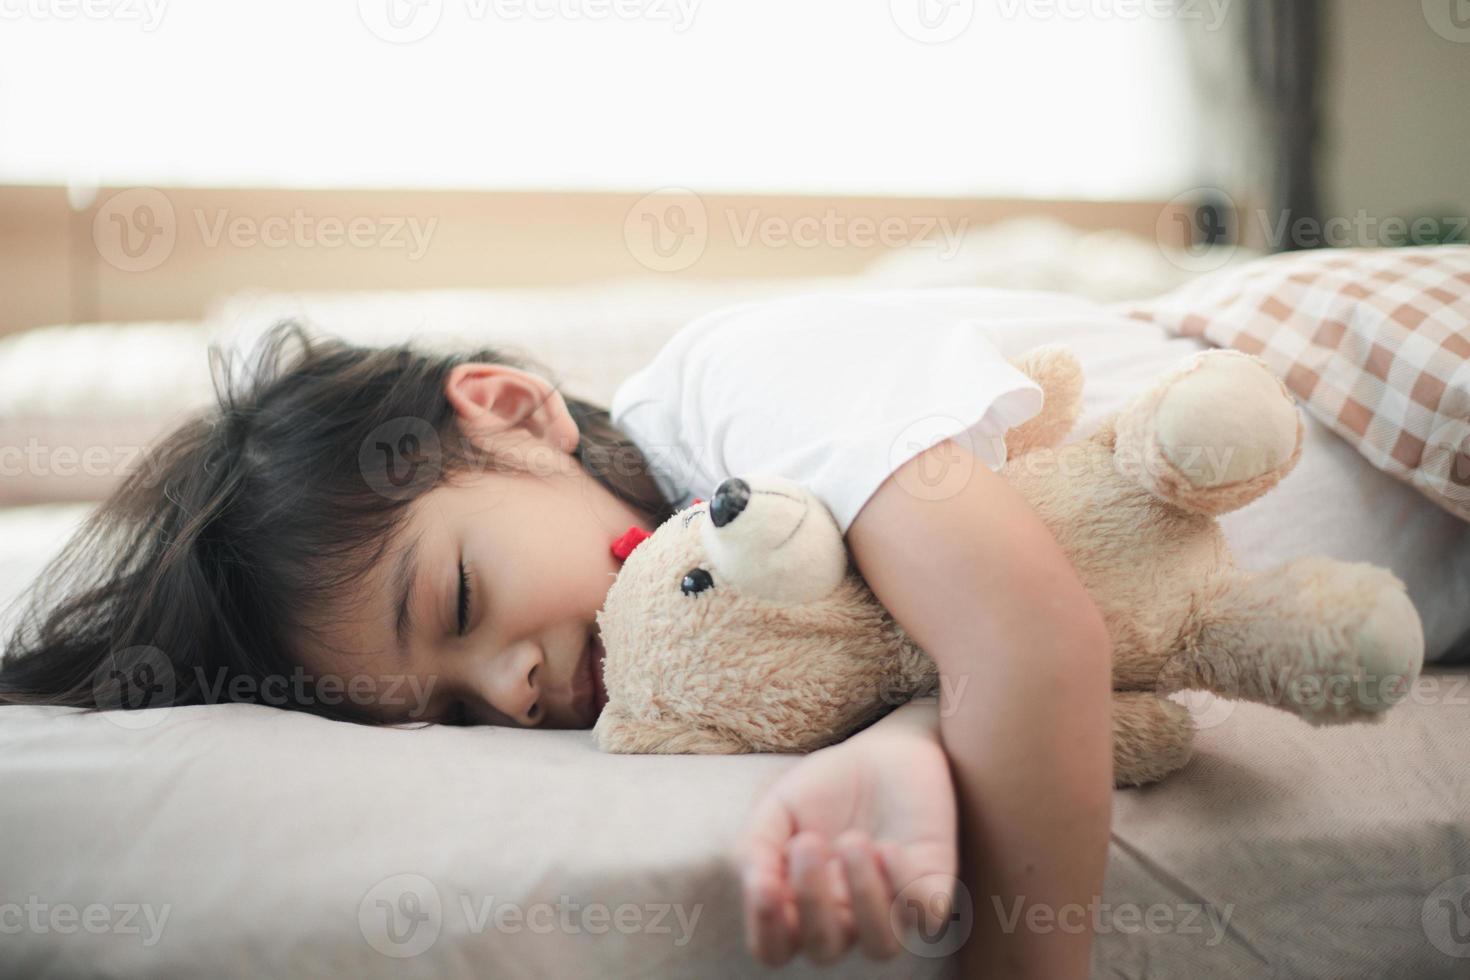 criança menina dorme na cama com um ursinho de pelúcia de brinquedo foto